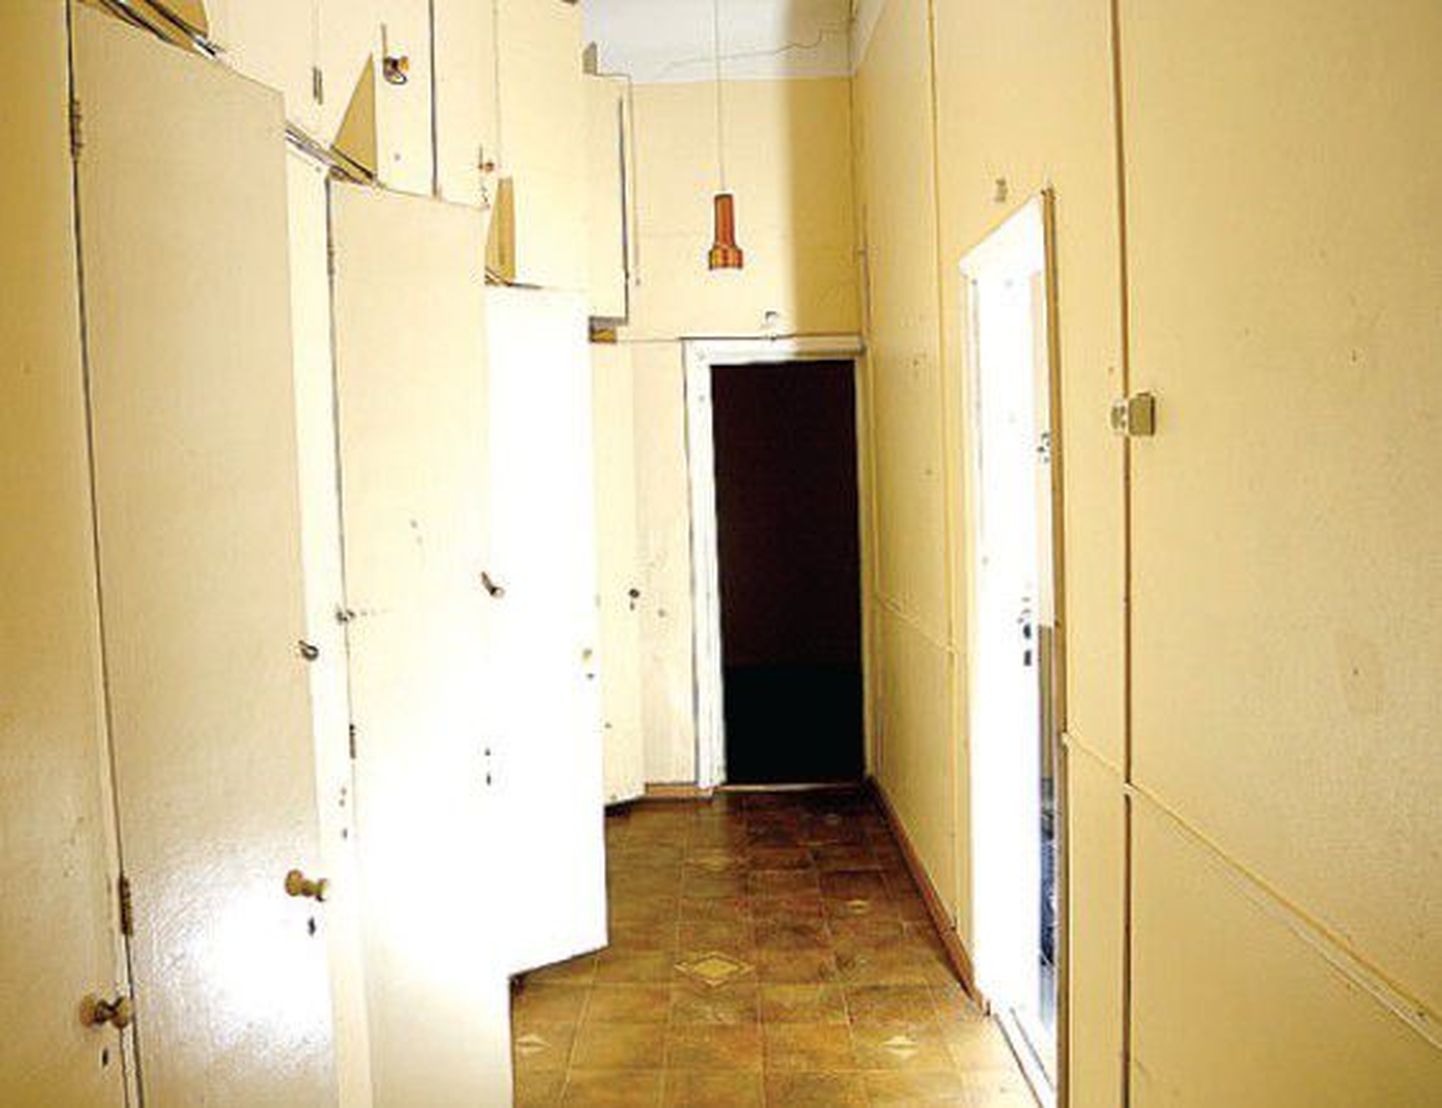 Viimati 1990. aastatel 
remonti näinud räämas  õpilaselamu koridor.